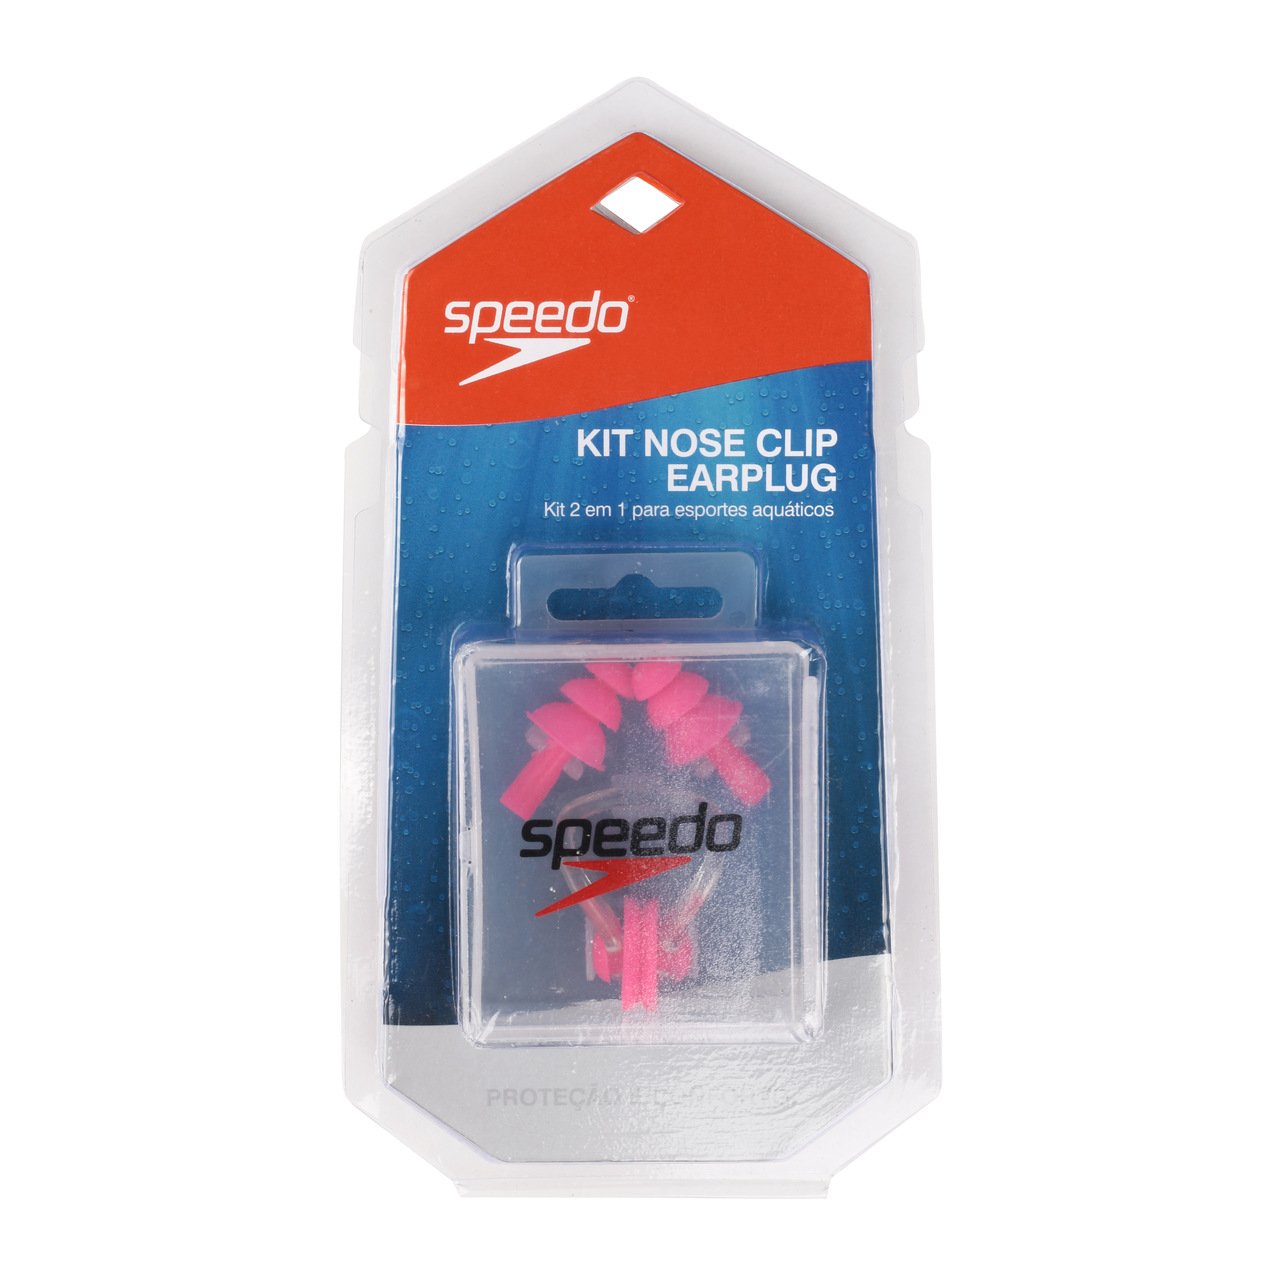 Nose Clip e Earplug Speedo Kit 2 em 1 - Rosa - 1